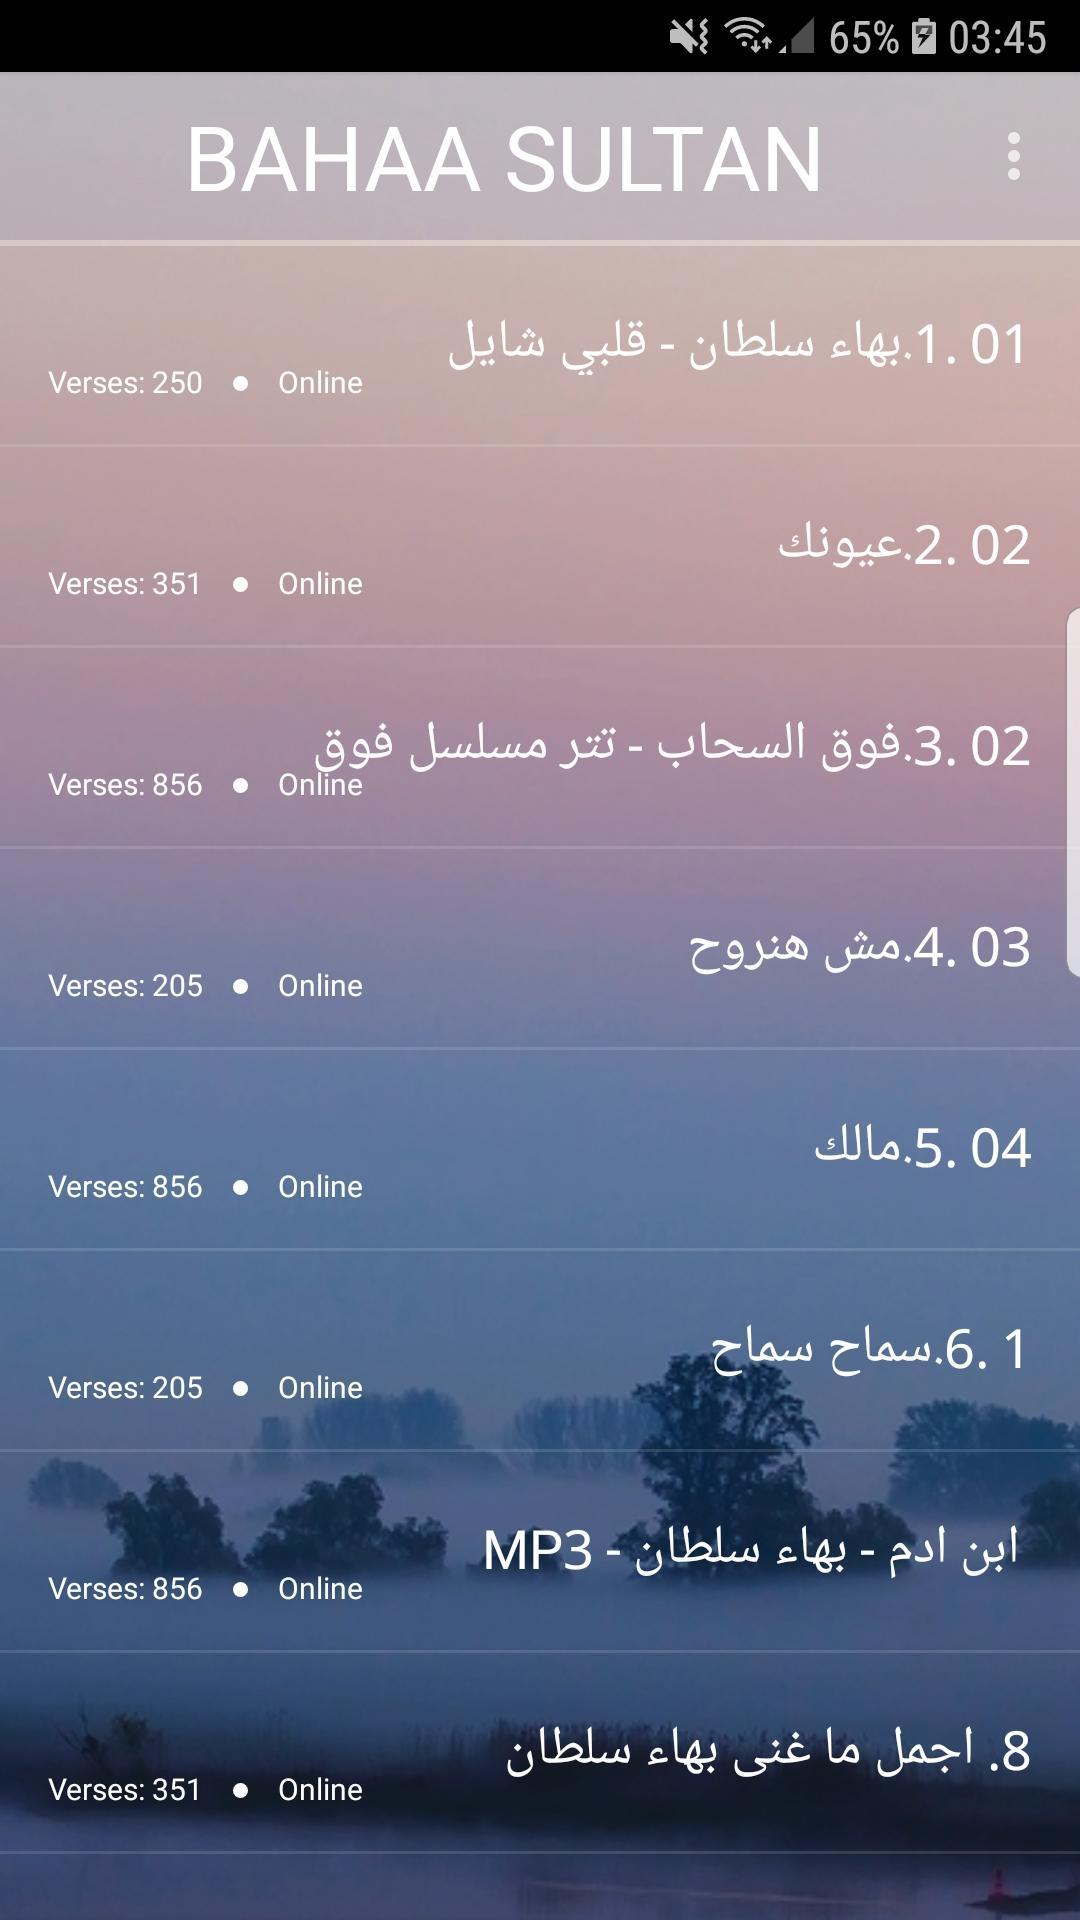 اغاني بهاء سلطان 2019-Aghani bahaa soltan ‎MP3 for Android - APK Download